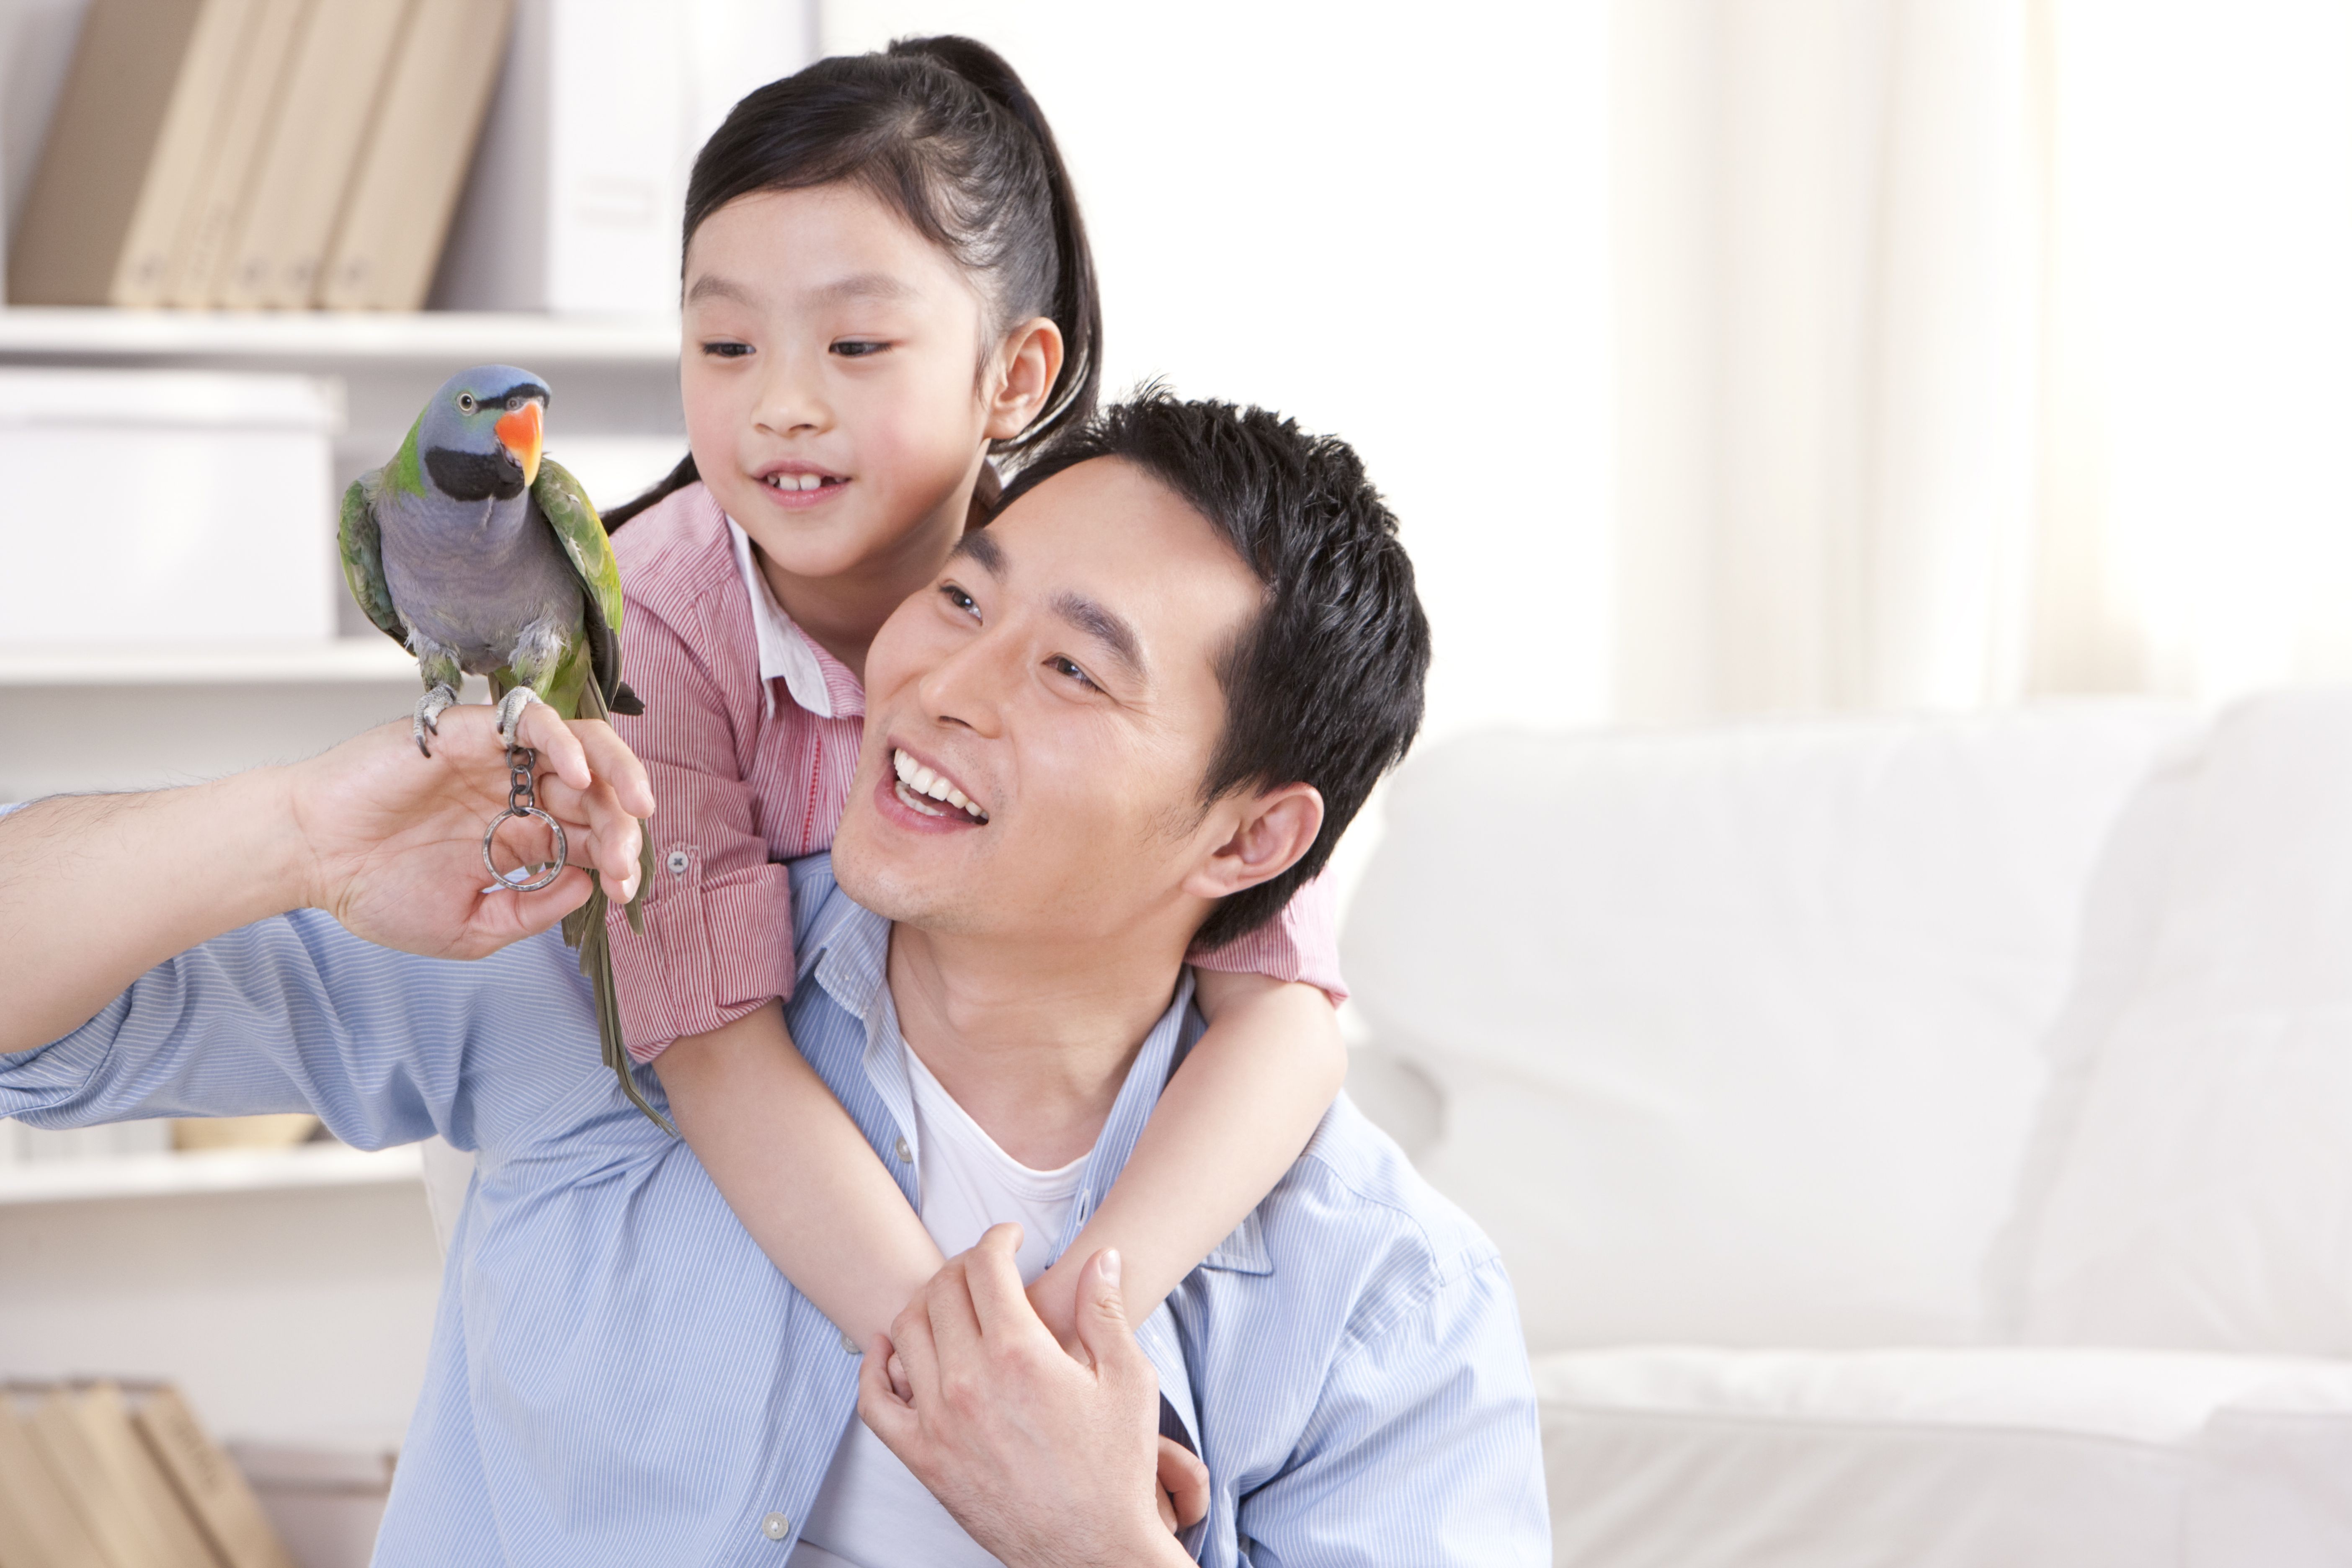 5 maneiras de encontrar um novo lar para seu pássaro